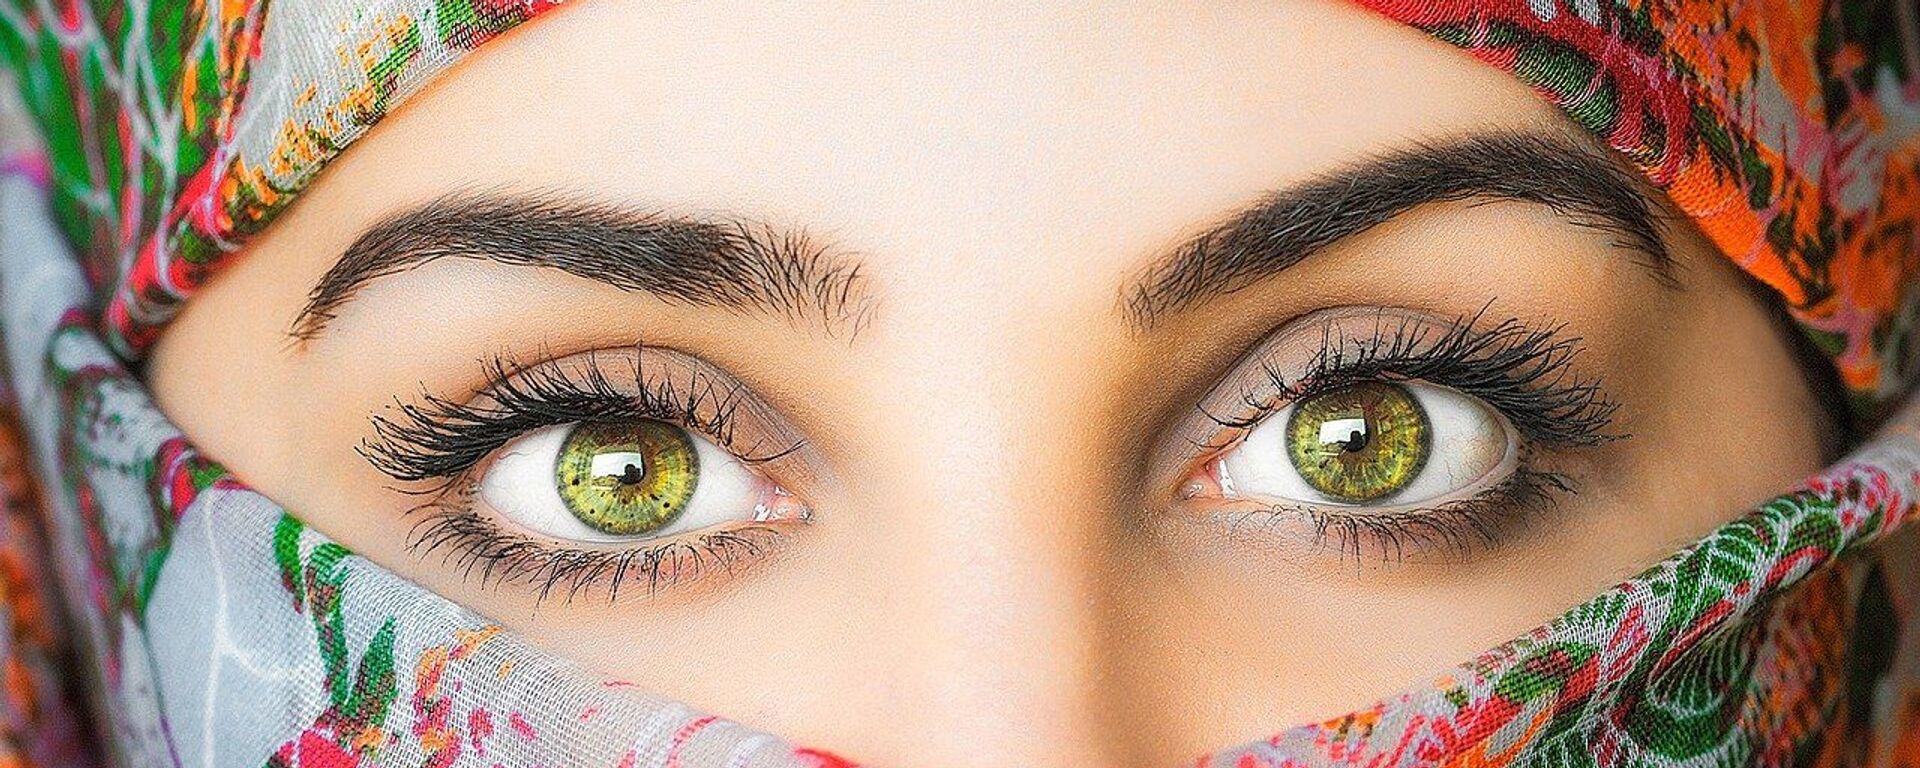 عيون خضراء  - سبوتنيك عربي, 1920, 22.03.2021